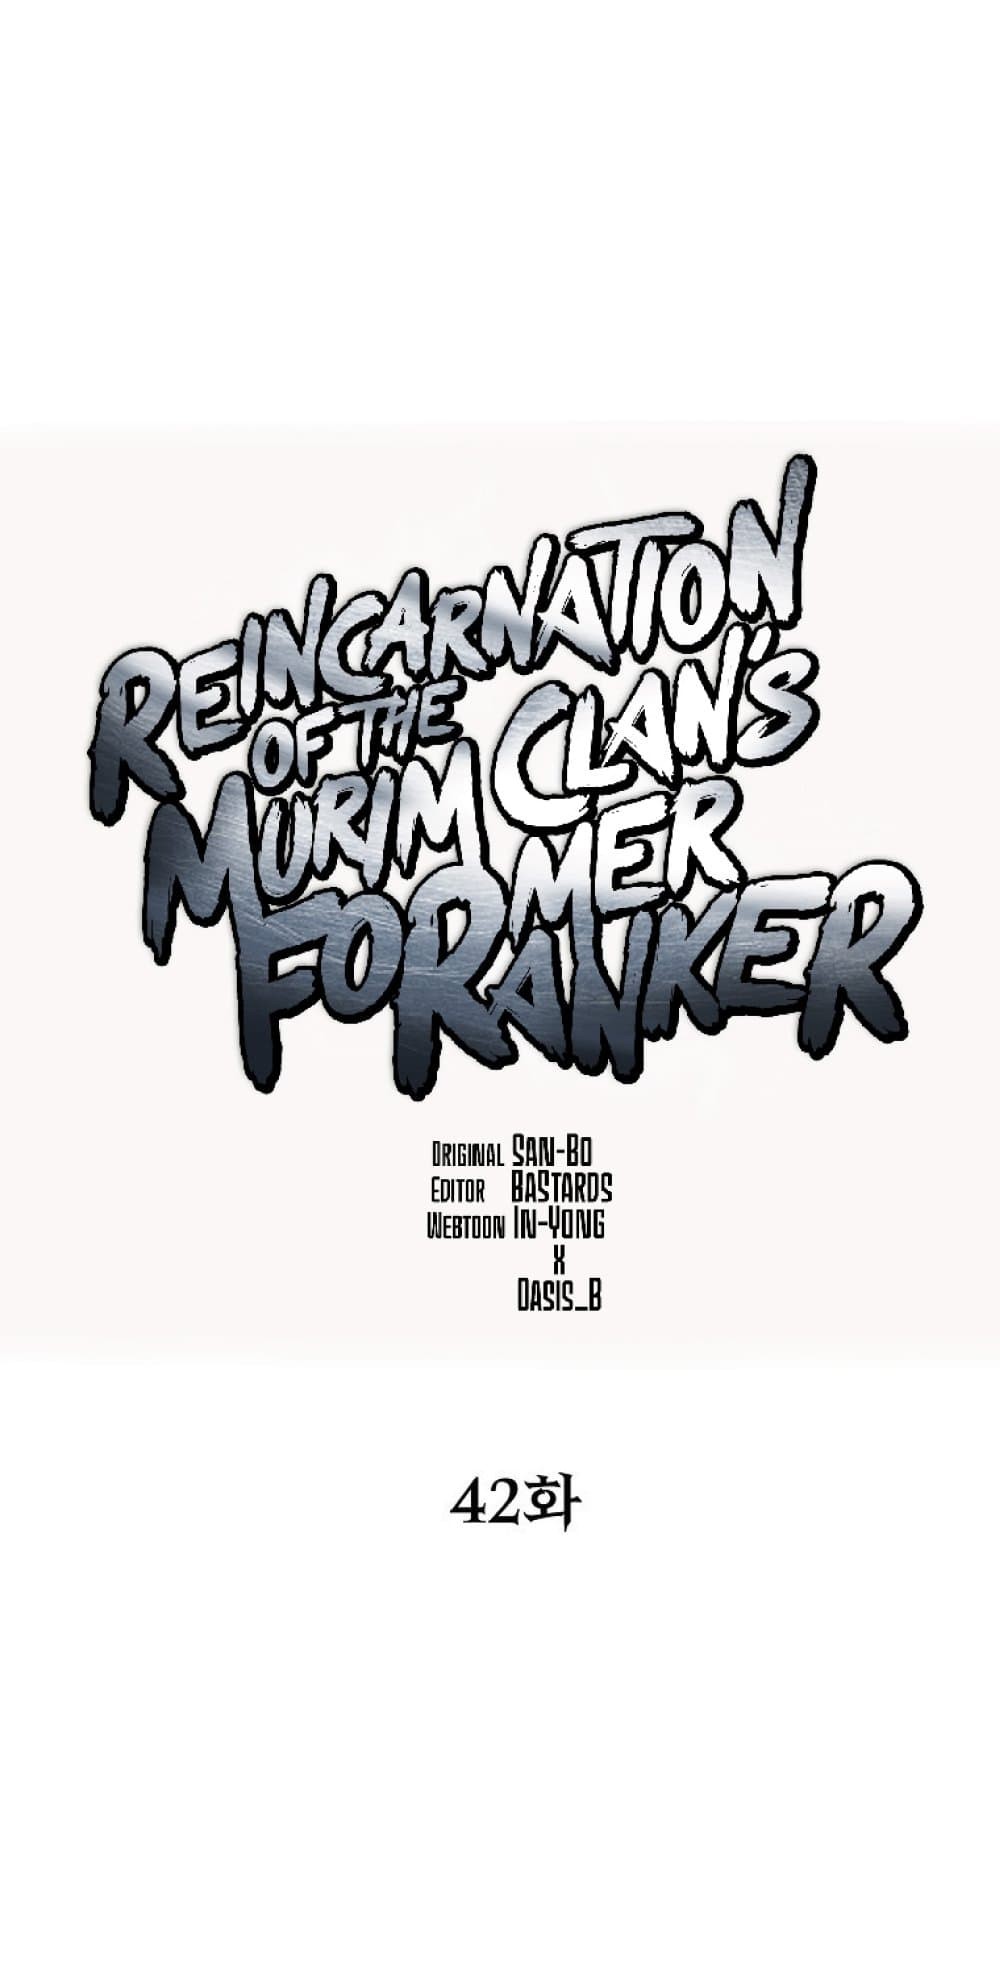 Reincarnation-of-the-Murim-Clans-Former-Ranker--42-18.jpg